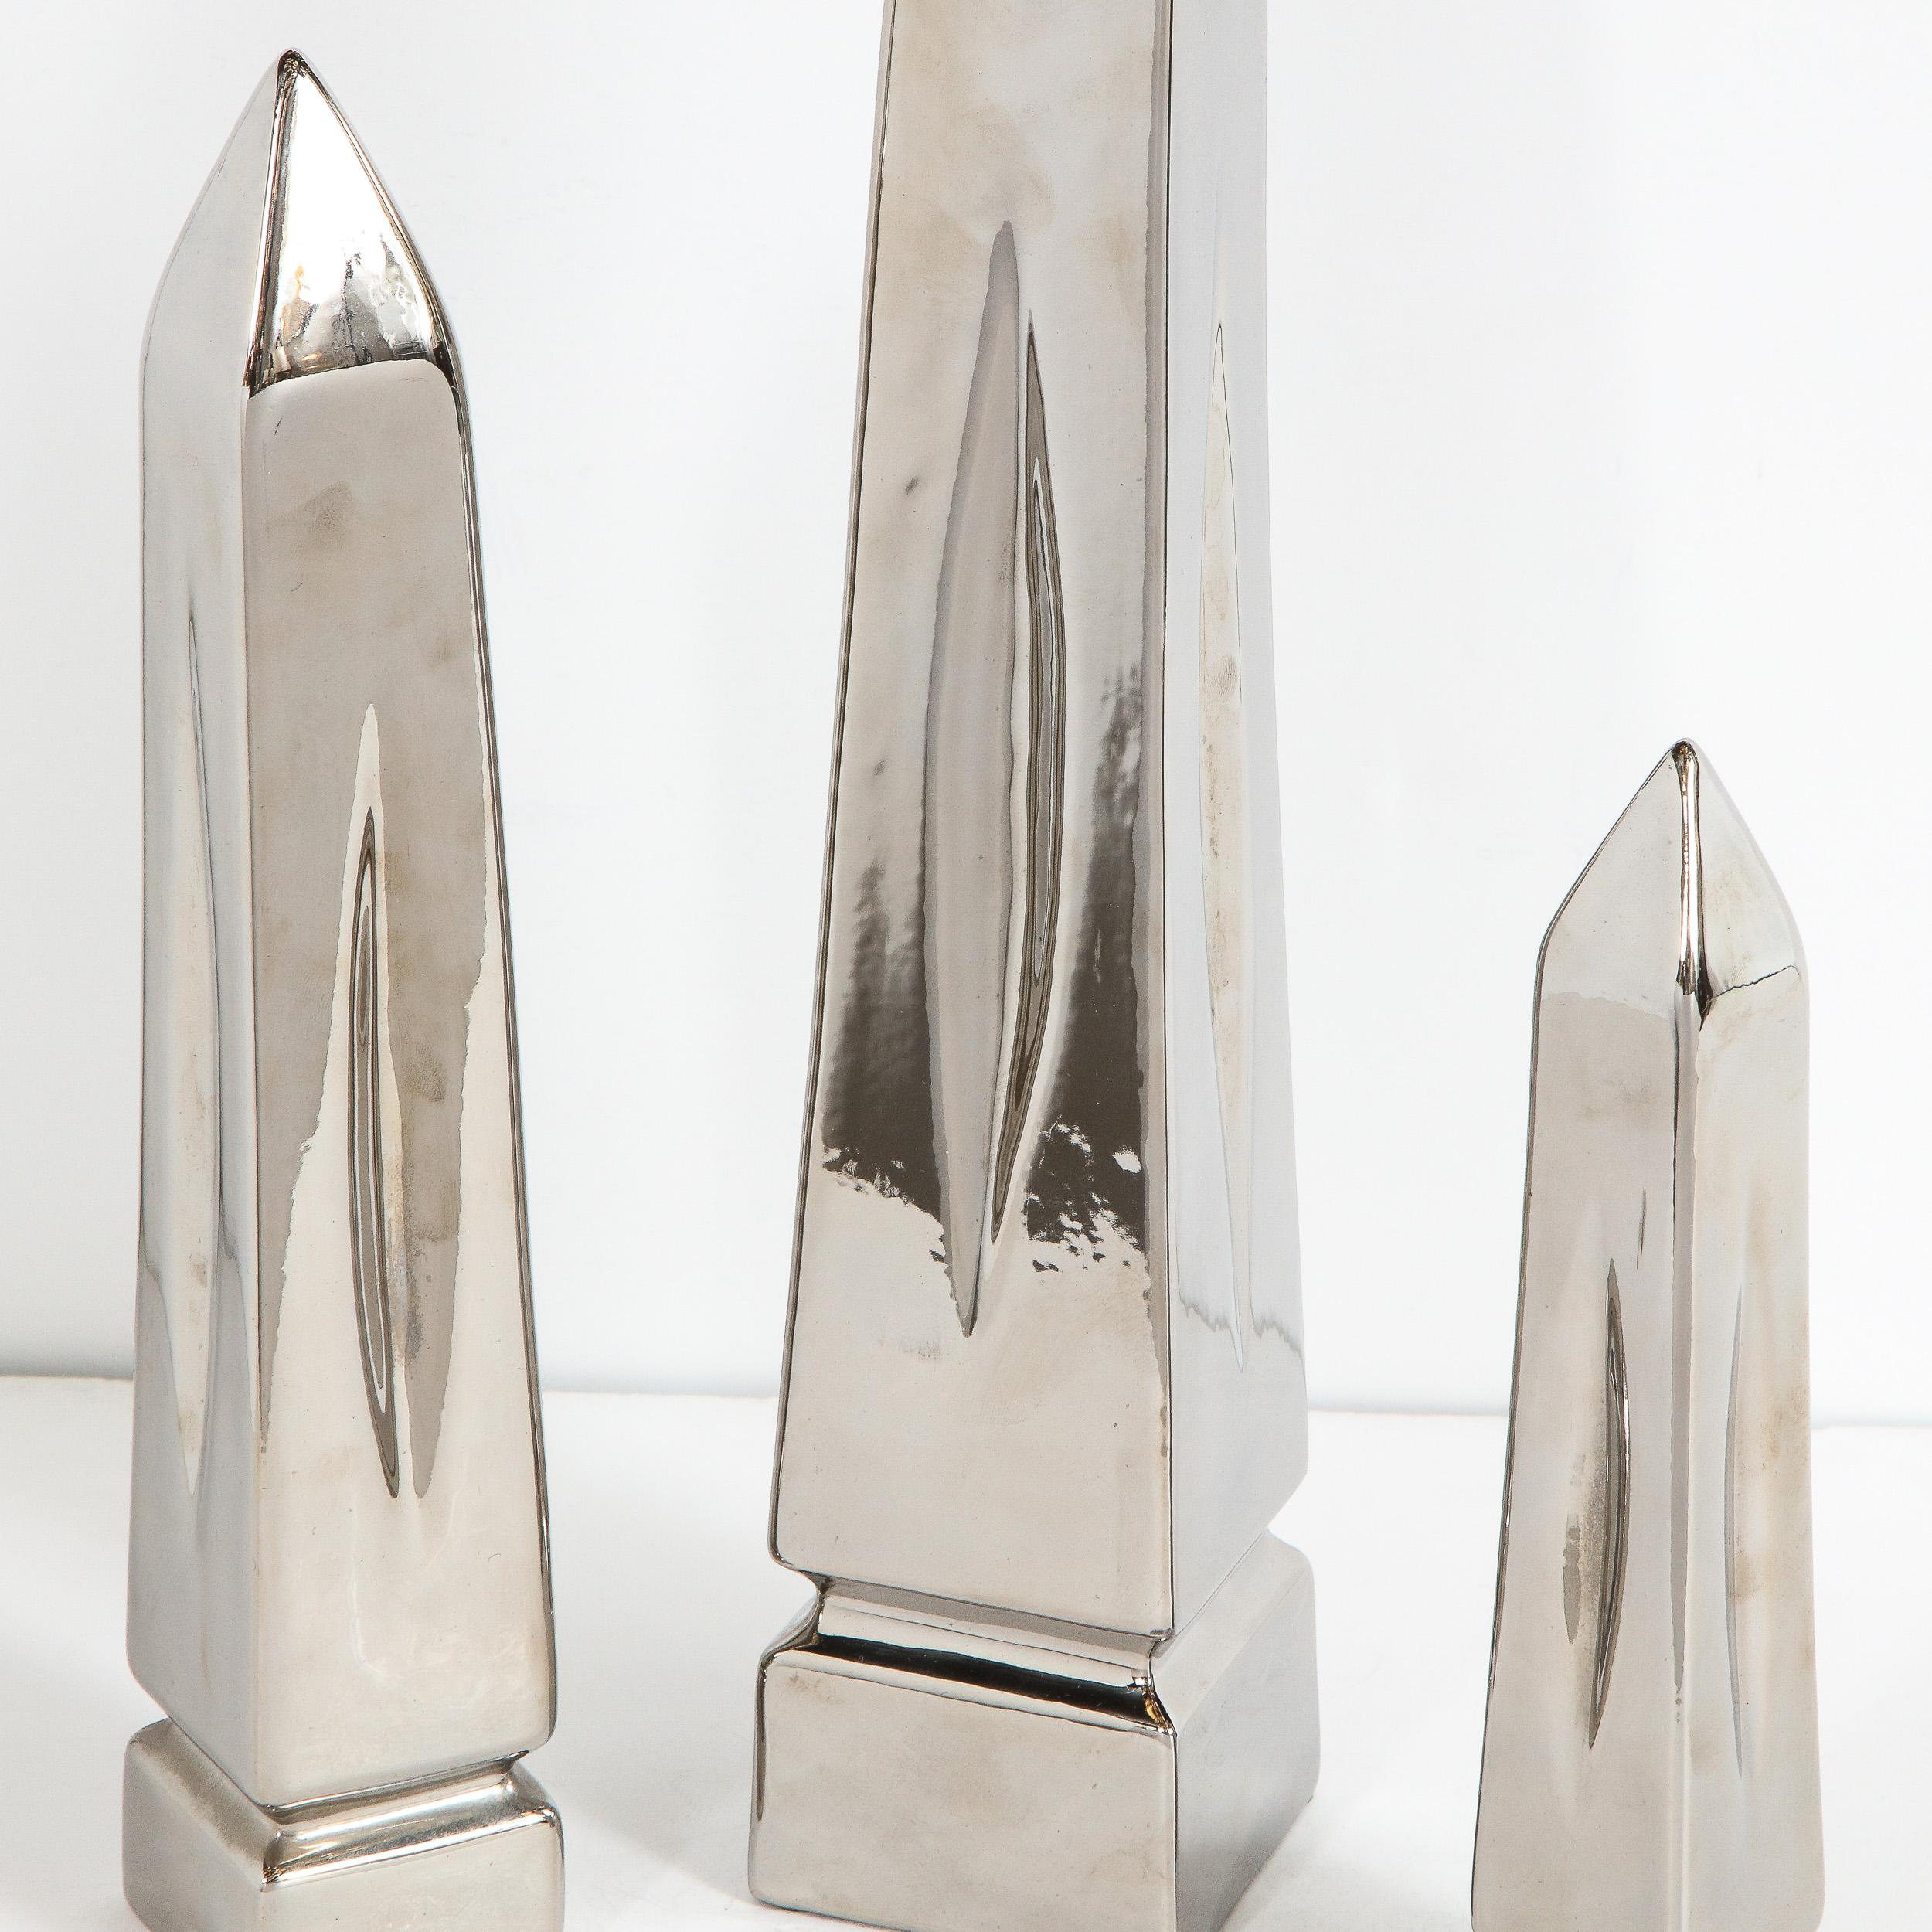 Cet étonnant ensemble de trois sculptures obélisques a été réalisé par Jaru aux États-Unis, vers 1970. Elles présentent des formes d'obélisque avec des corps effilés qui se rejoignent au sommet pour former une pointe, une indentation incisée près de